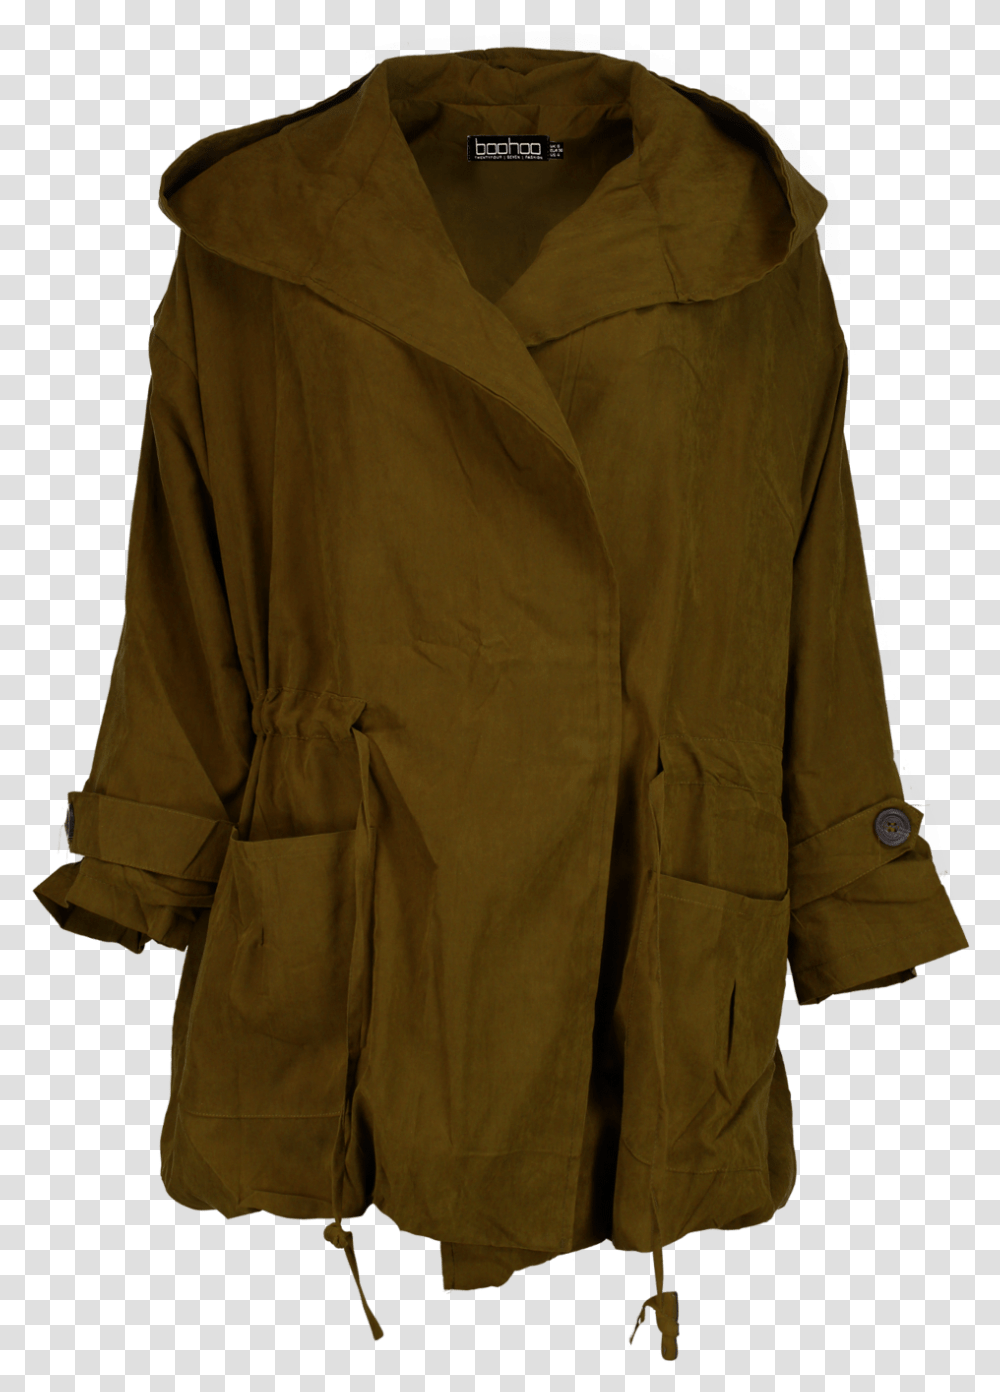 Lily Collins Pocket, Apparel, Coat, Overcoat Transparent Png